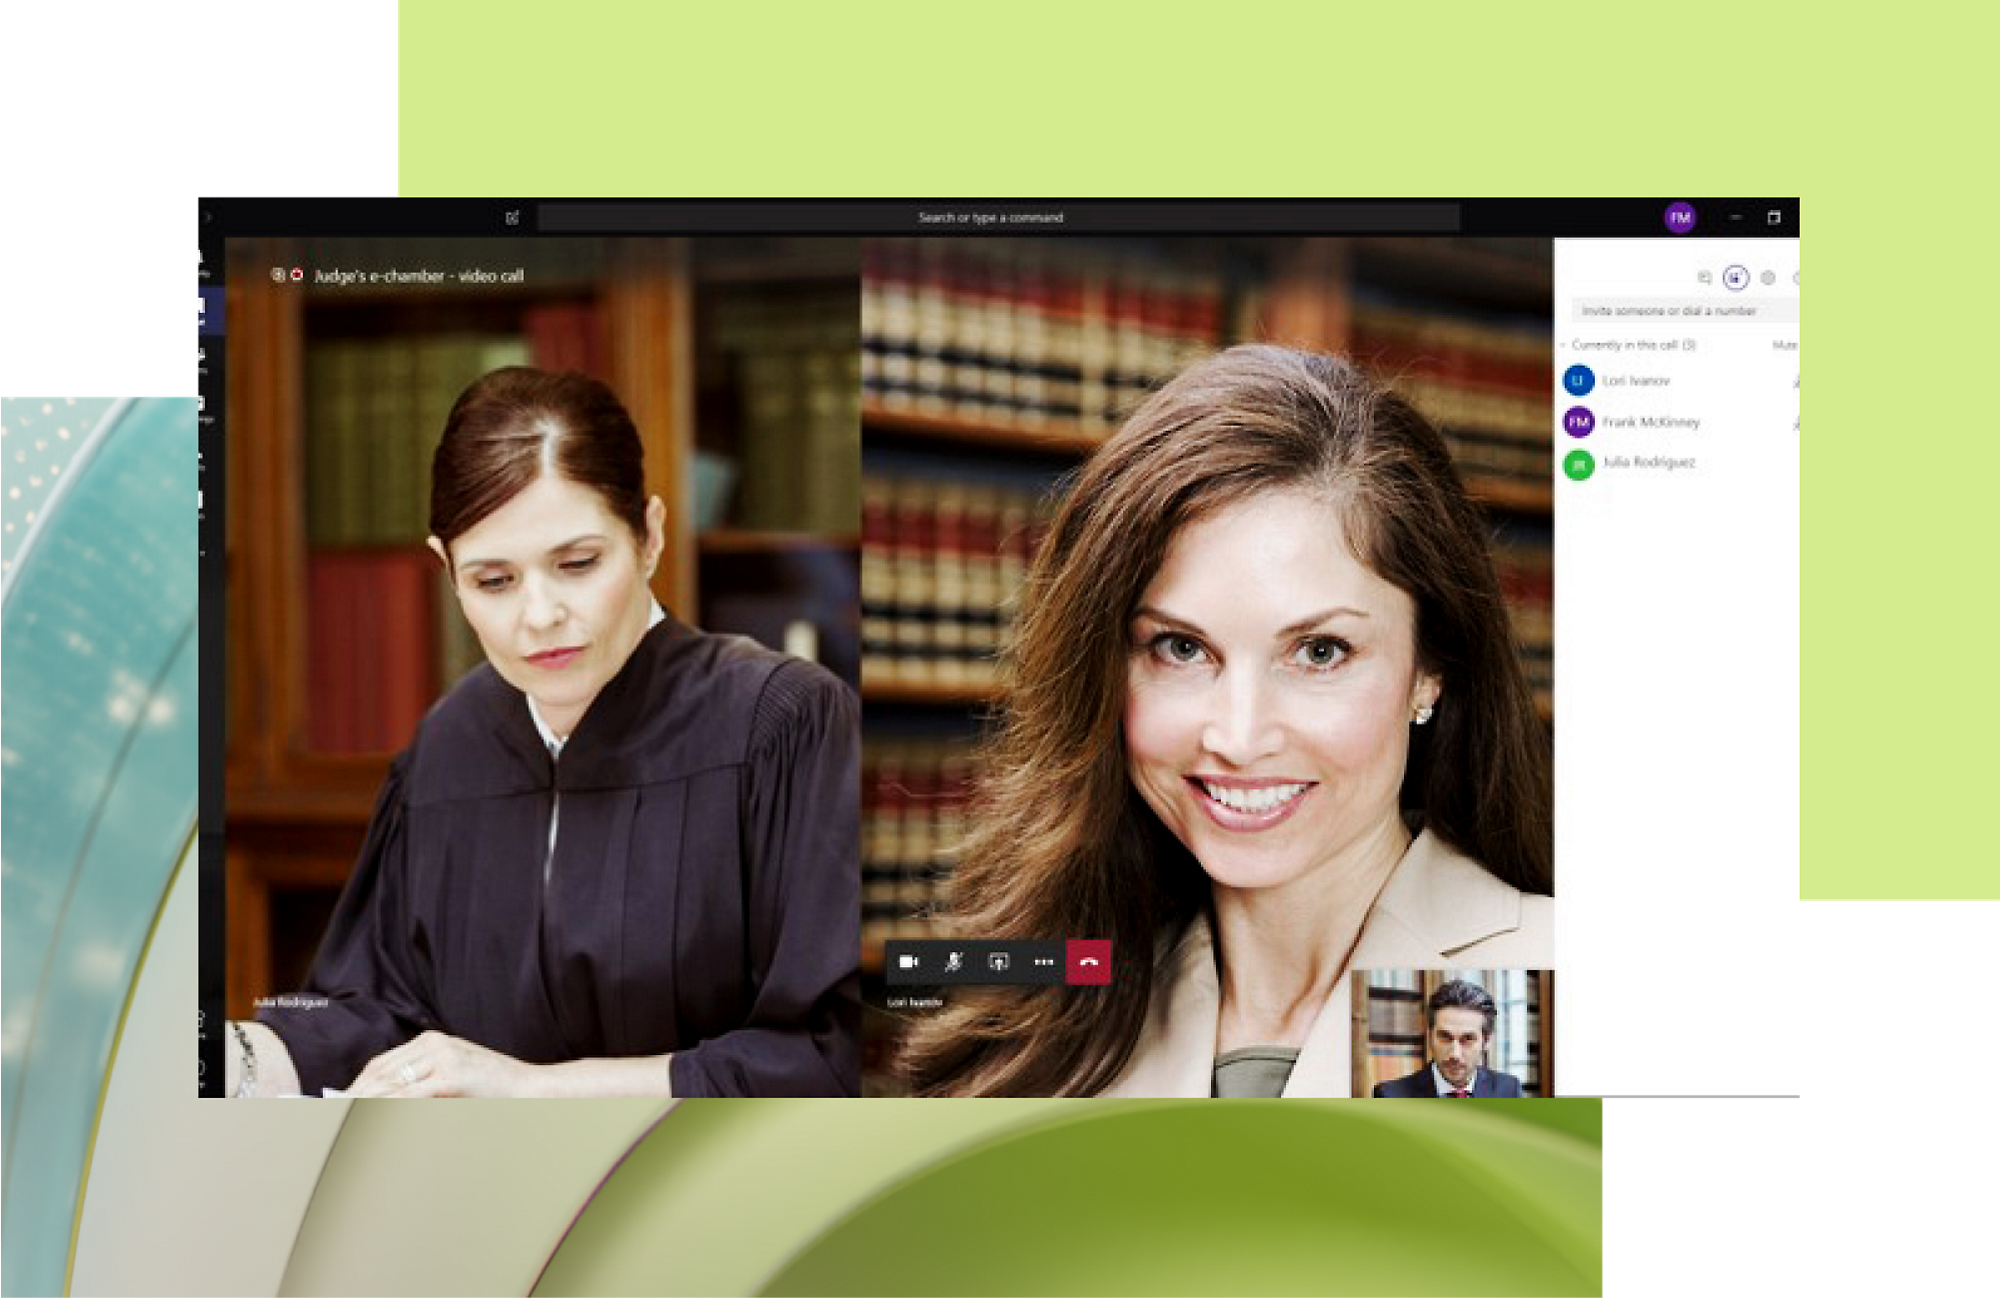 Kobieta w todze sędziowskiej spoglądająca na dokument, na który nakłada się interfejs połączenia wideo, na którym widać uśmiechniętą kobietę i mężczyznę 